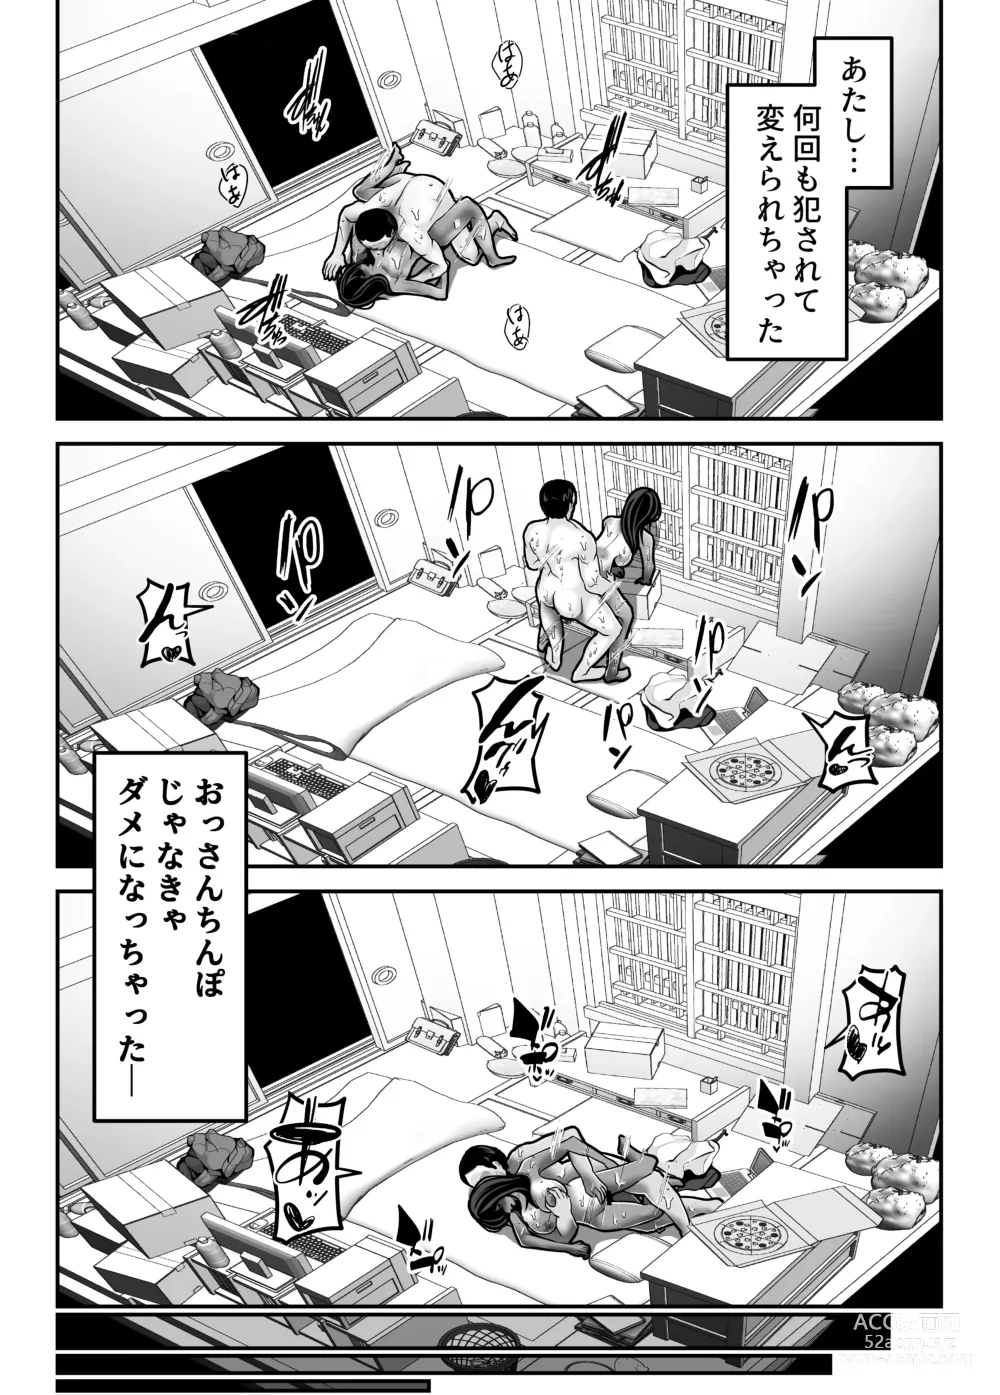 Page 51 of doujinshi Namaiki JK mo, Ossan Chinpo no Mae de wa Muryoku desu.